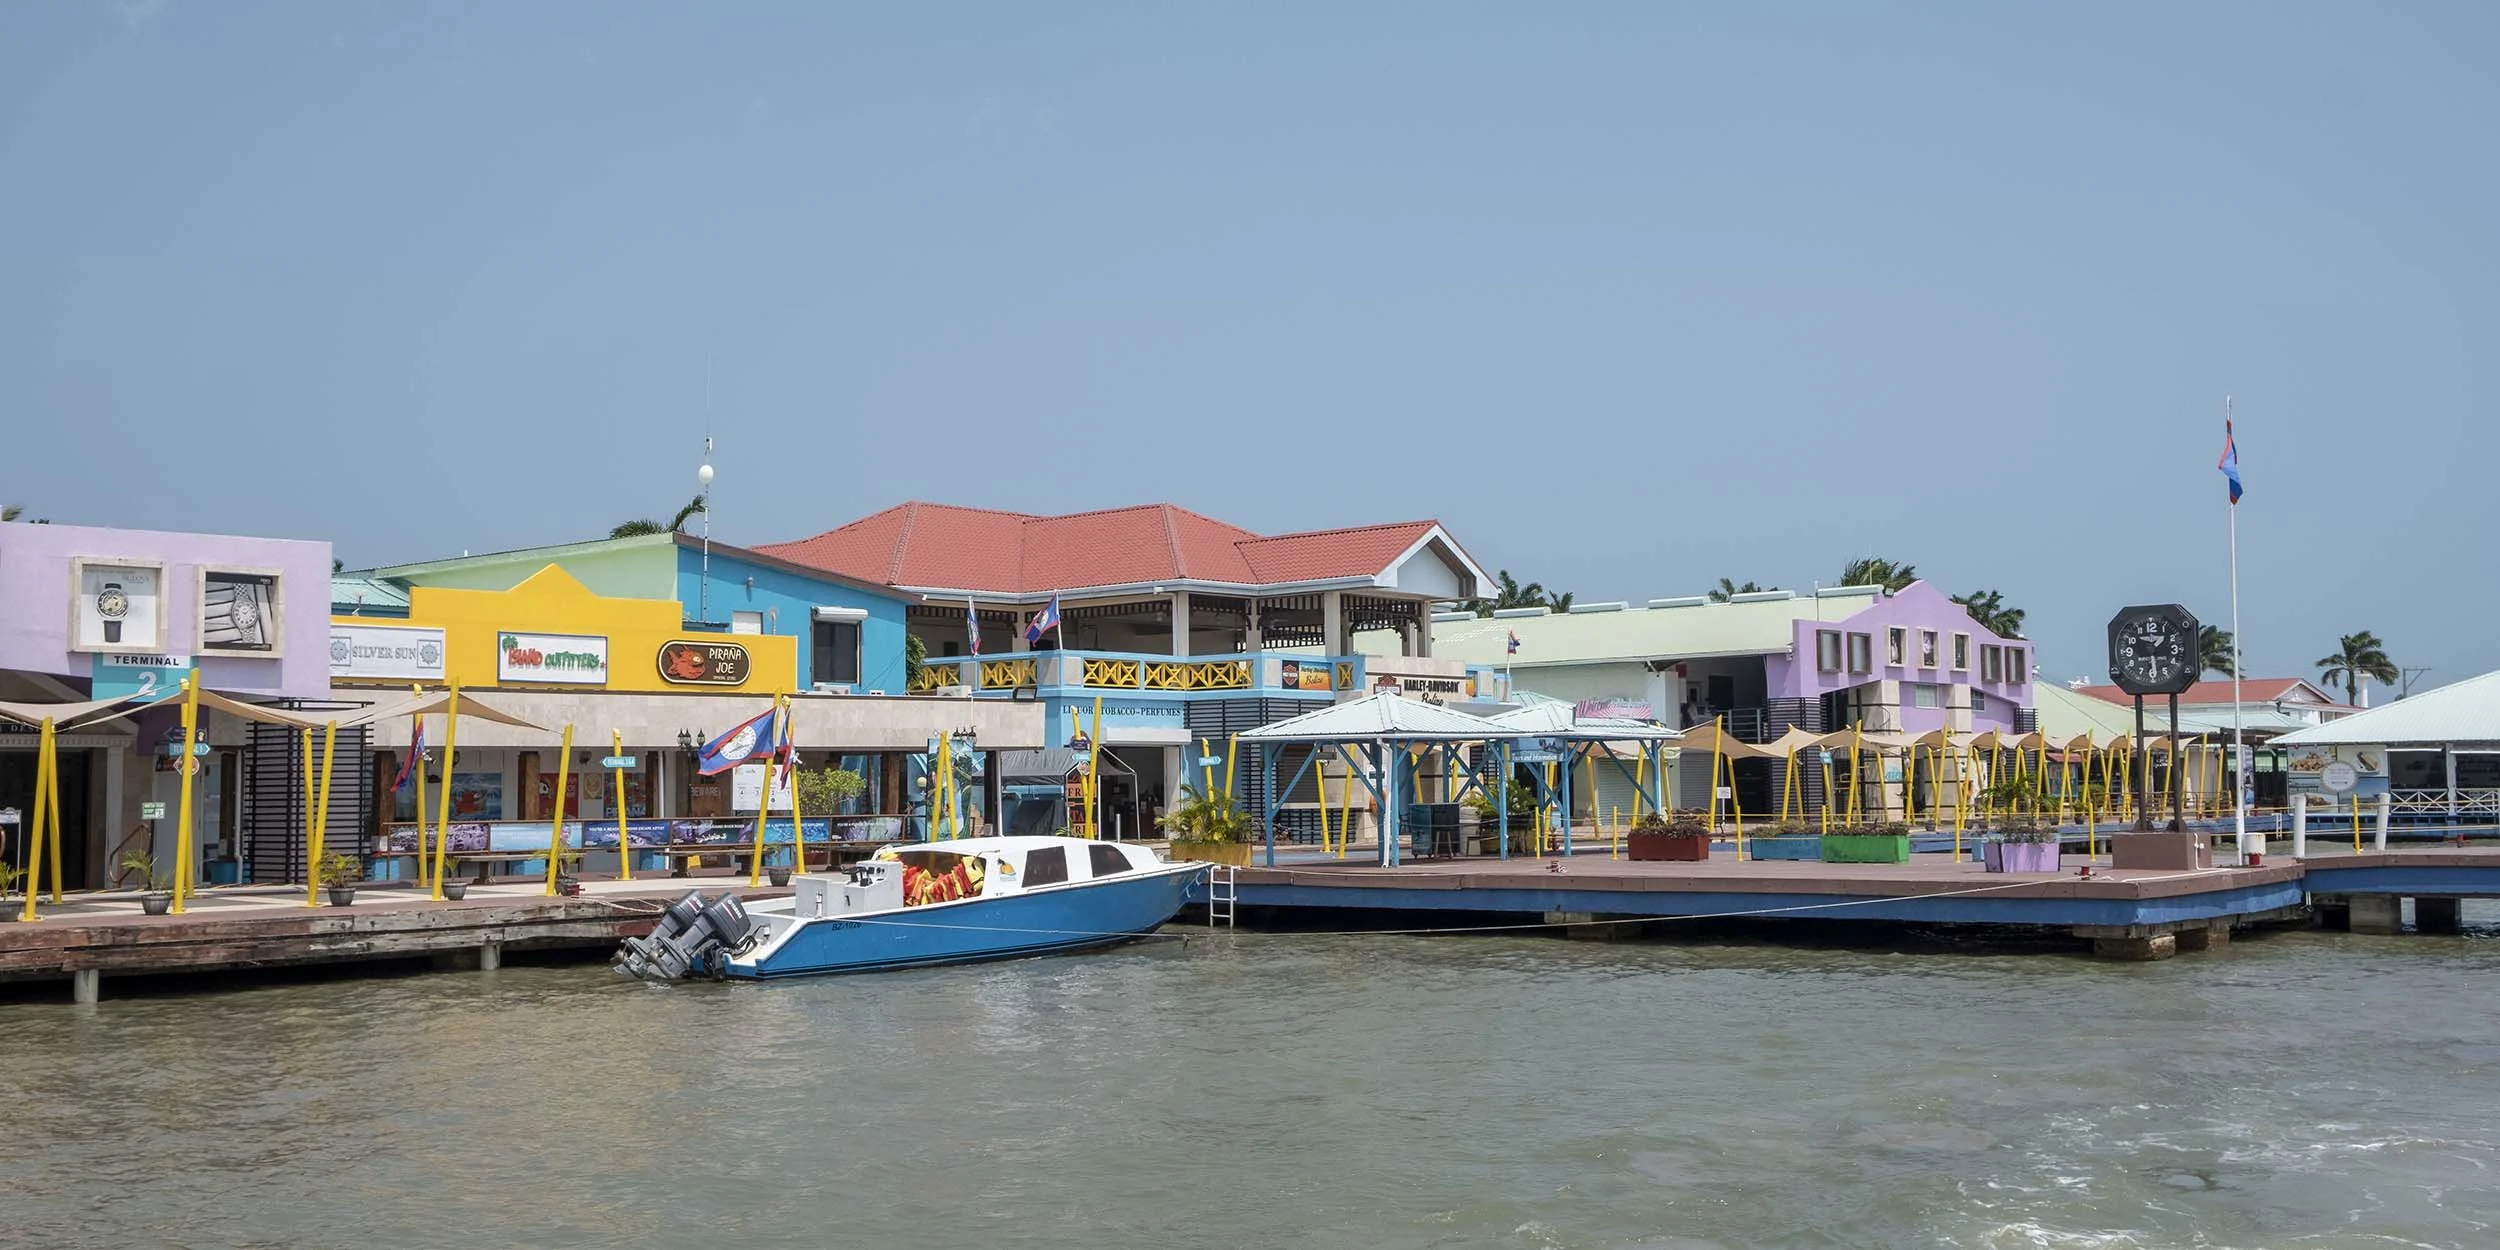 Parcourez les boutiques colorées de Belize City.